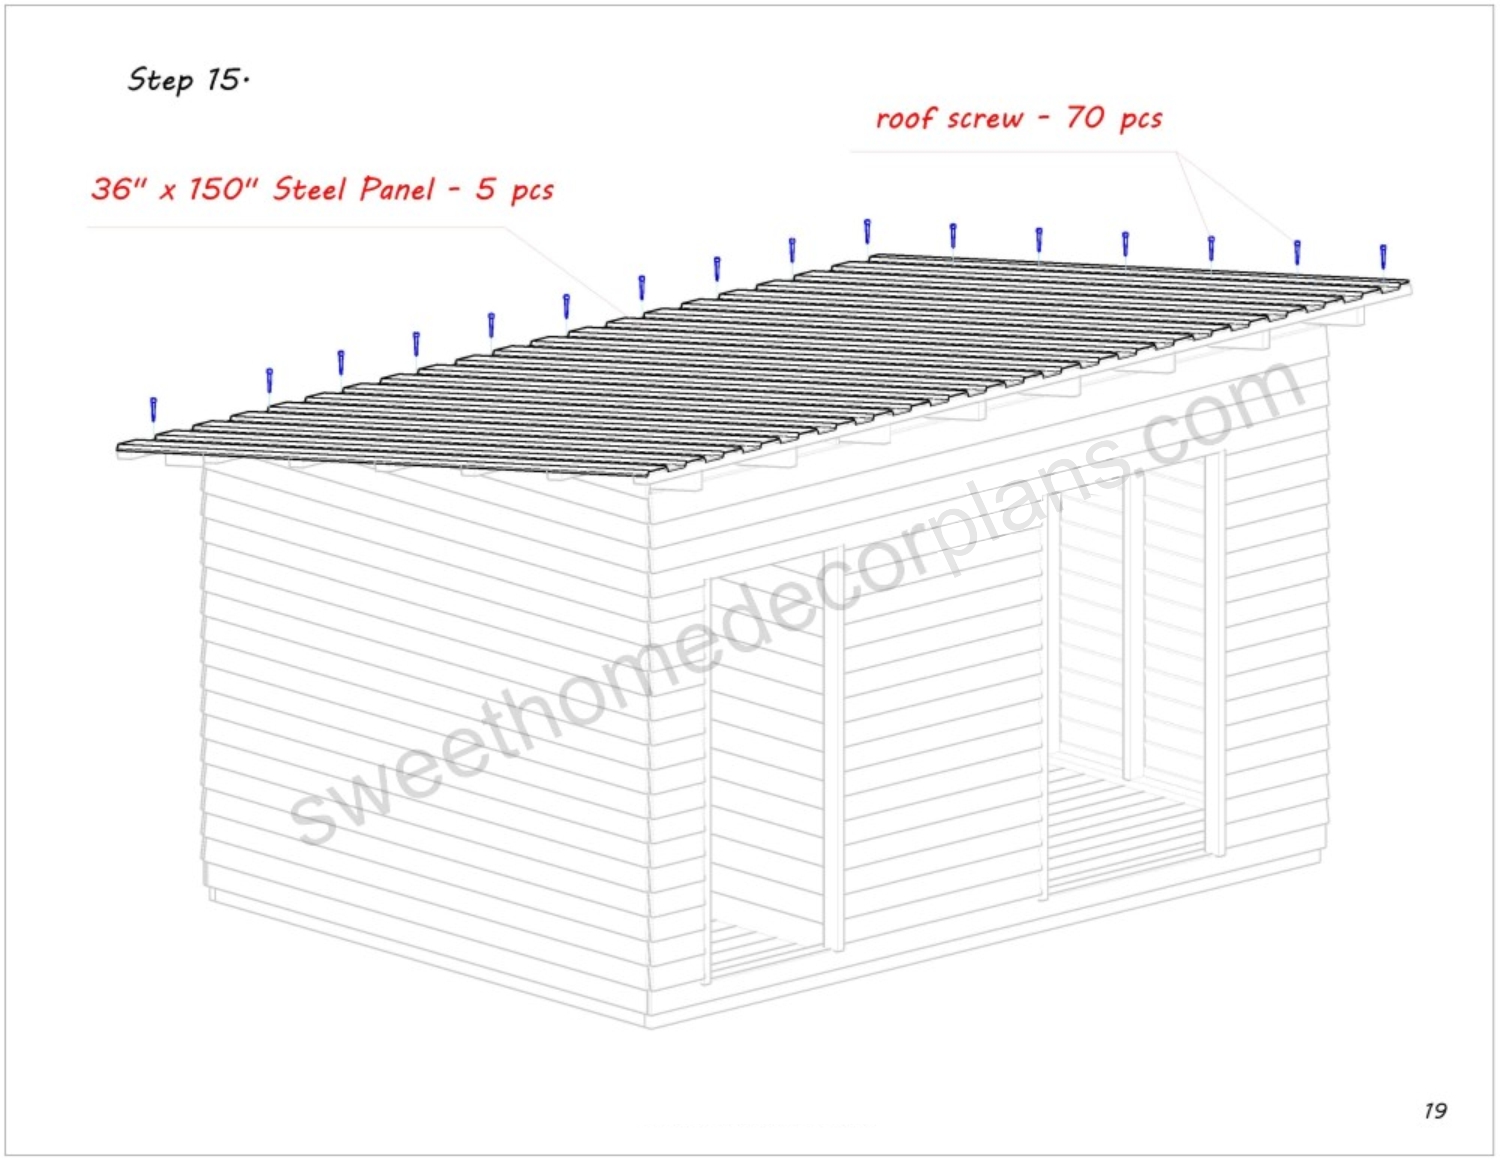 Wooden-14-x-10-goat-pig-shelter-plans-in-pdf